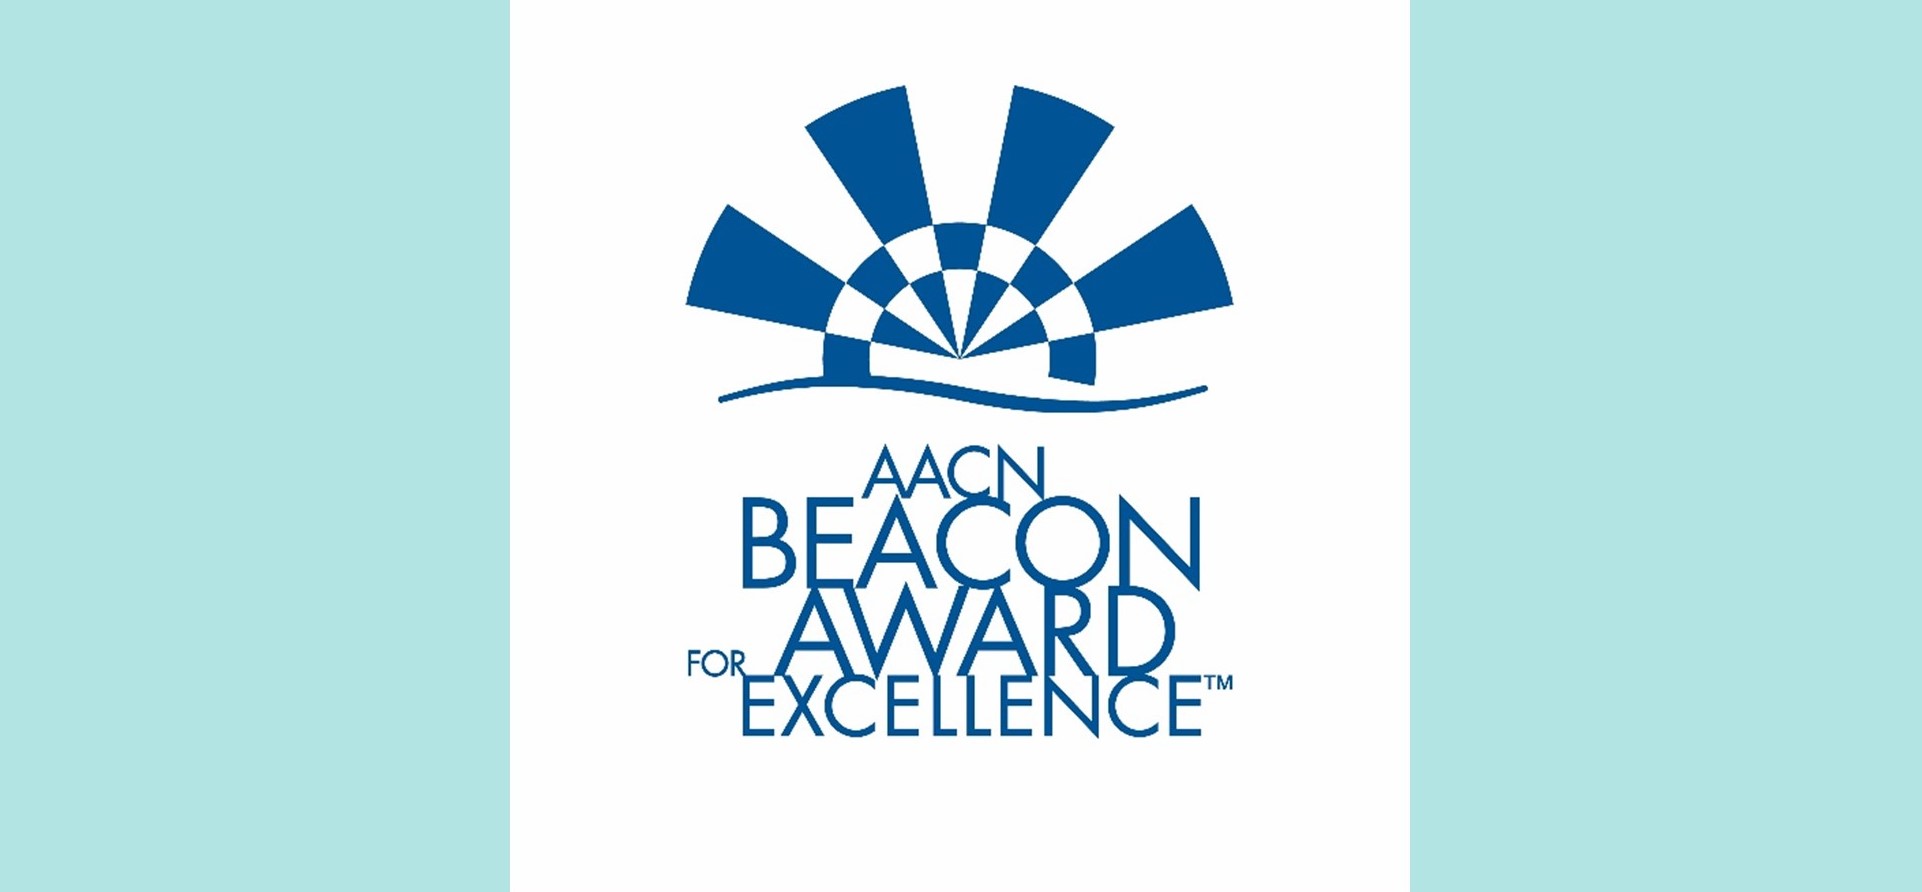 Beacon Award for Excellence logo